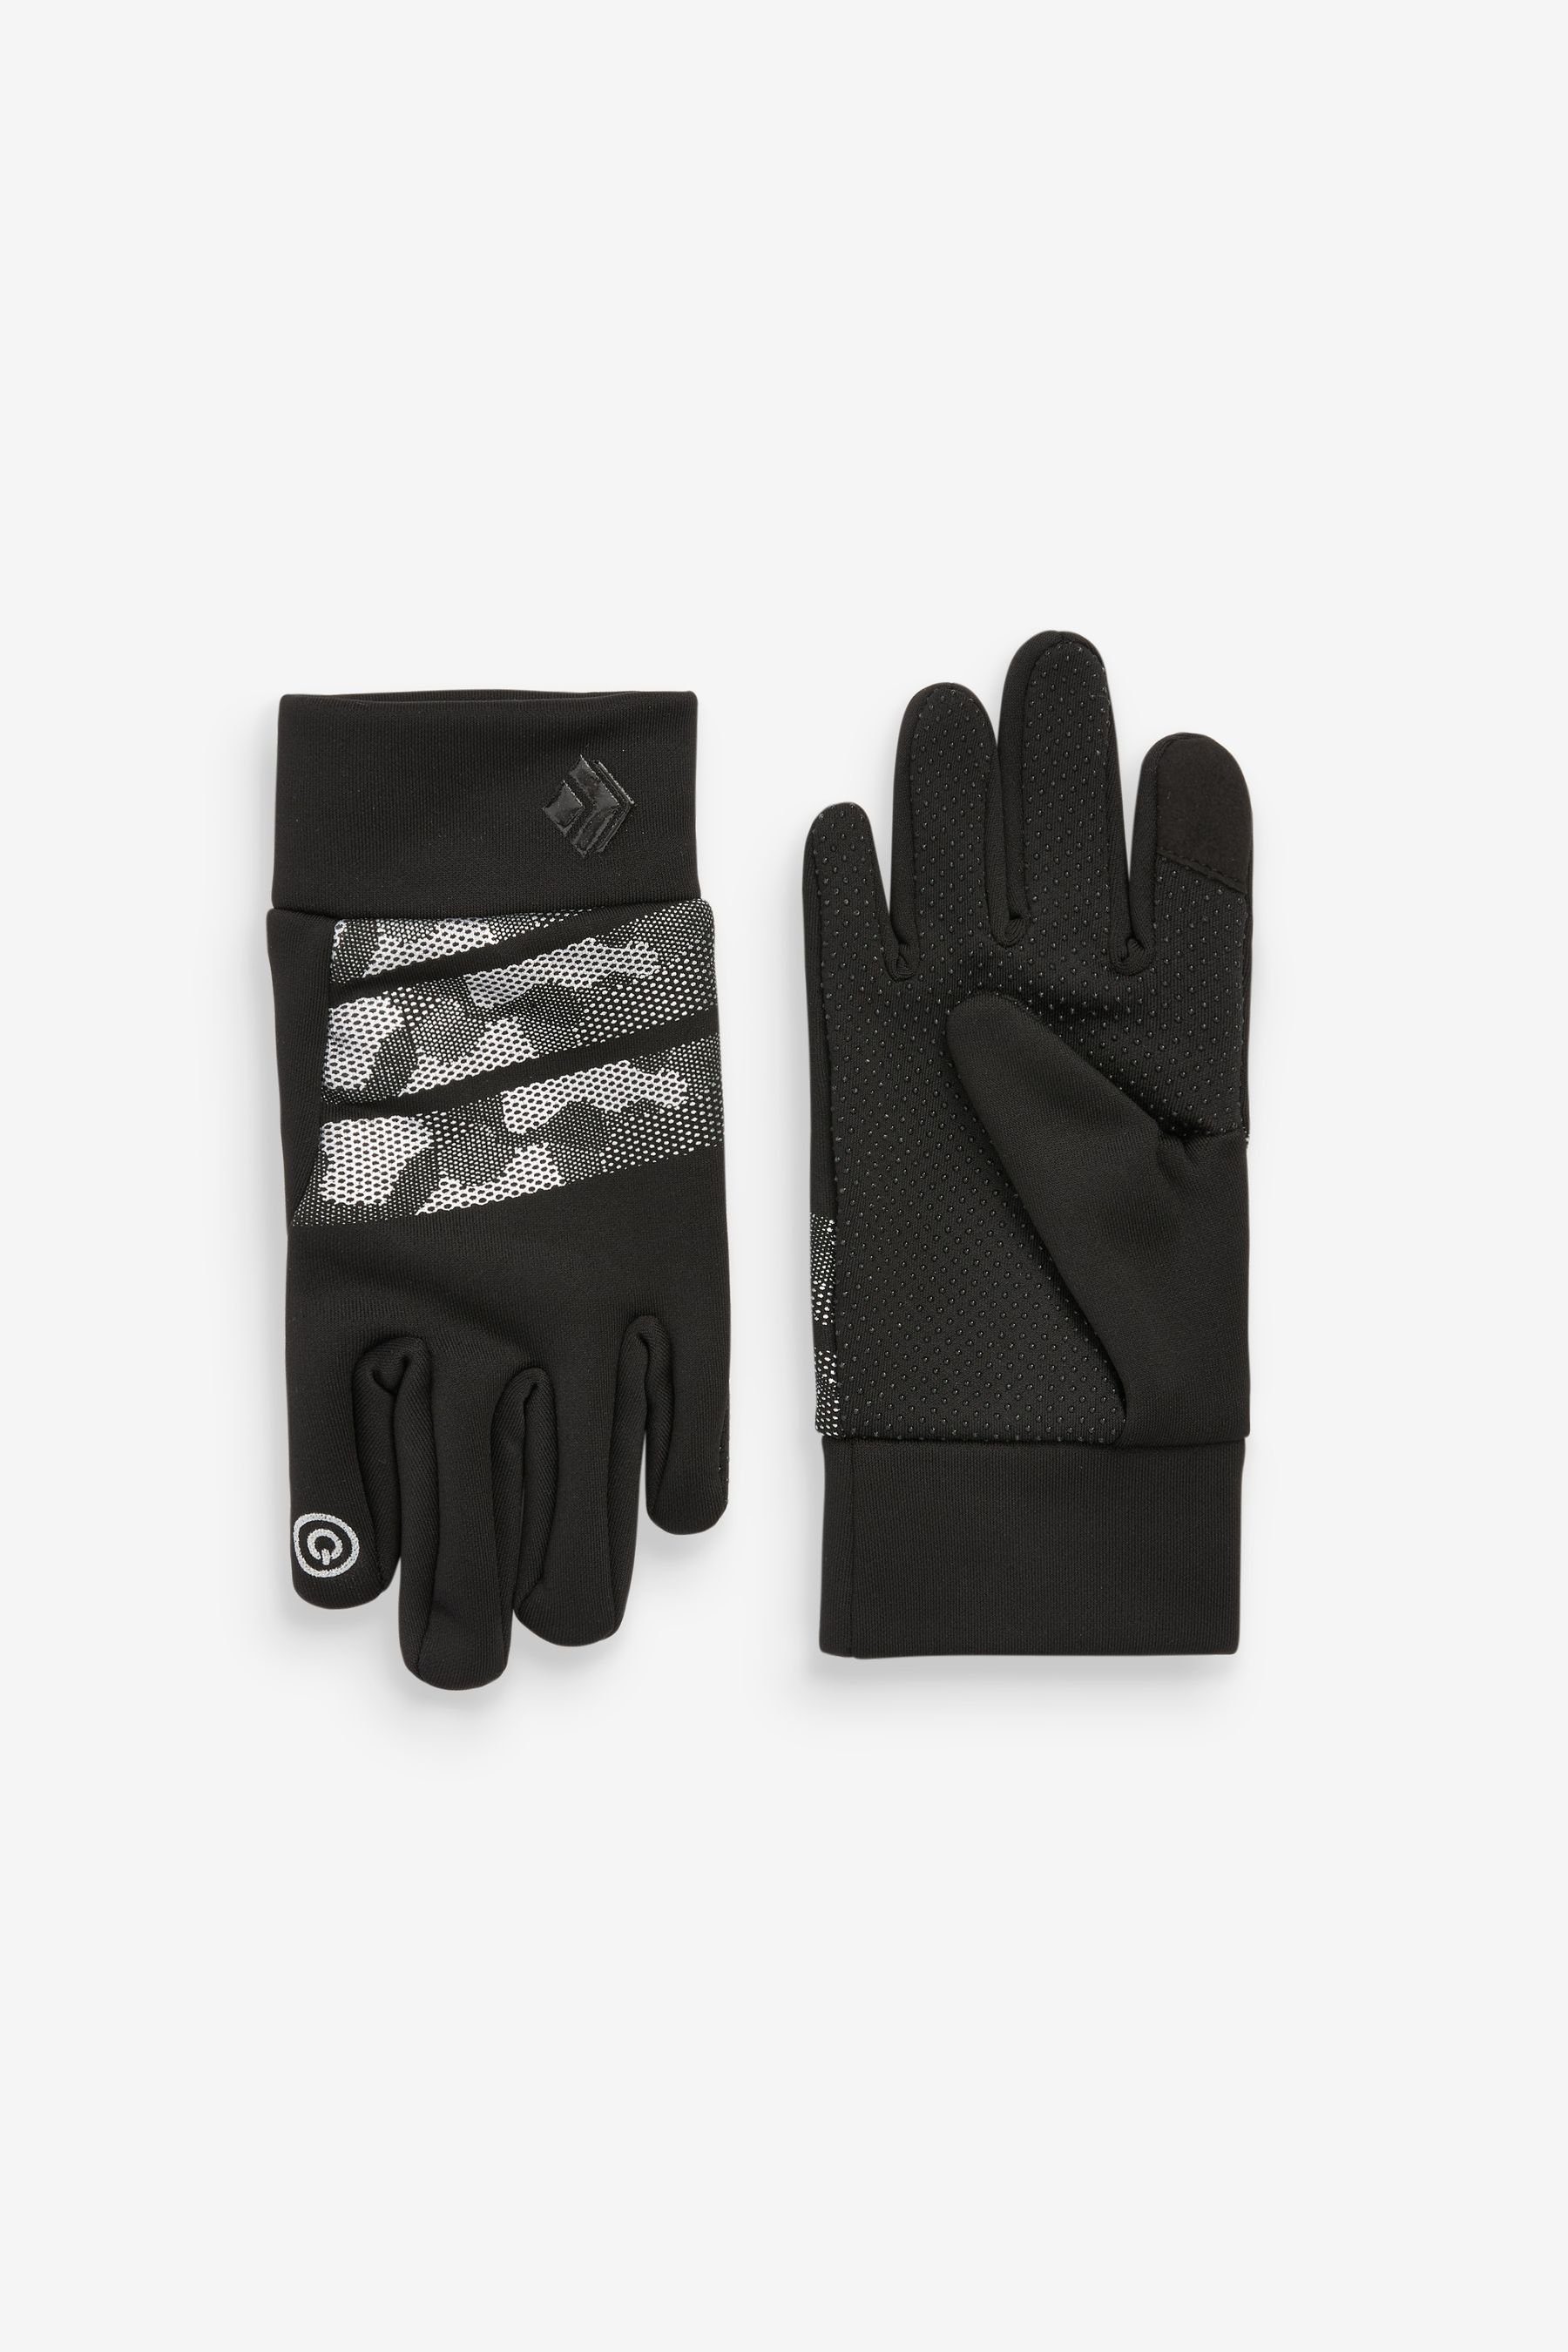 Strickhandschuhe Handschuhe Black/Grey Camouflage Next Sportliche